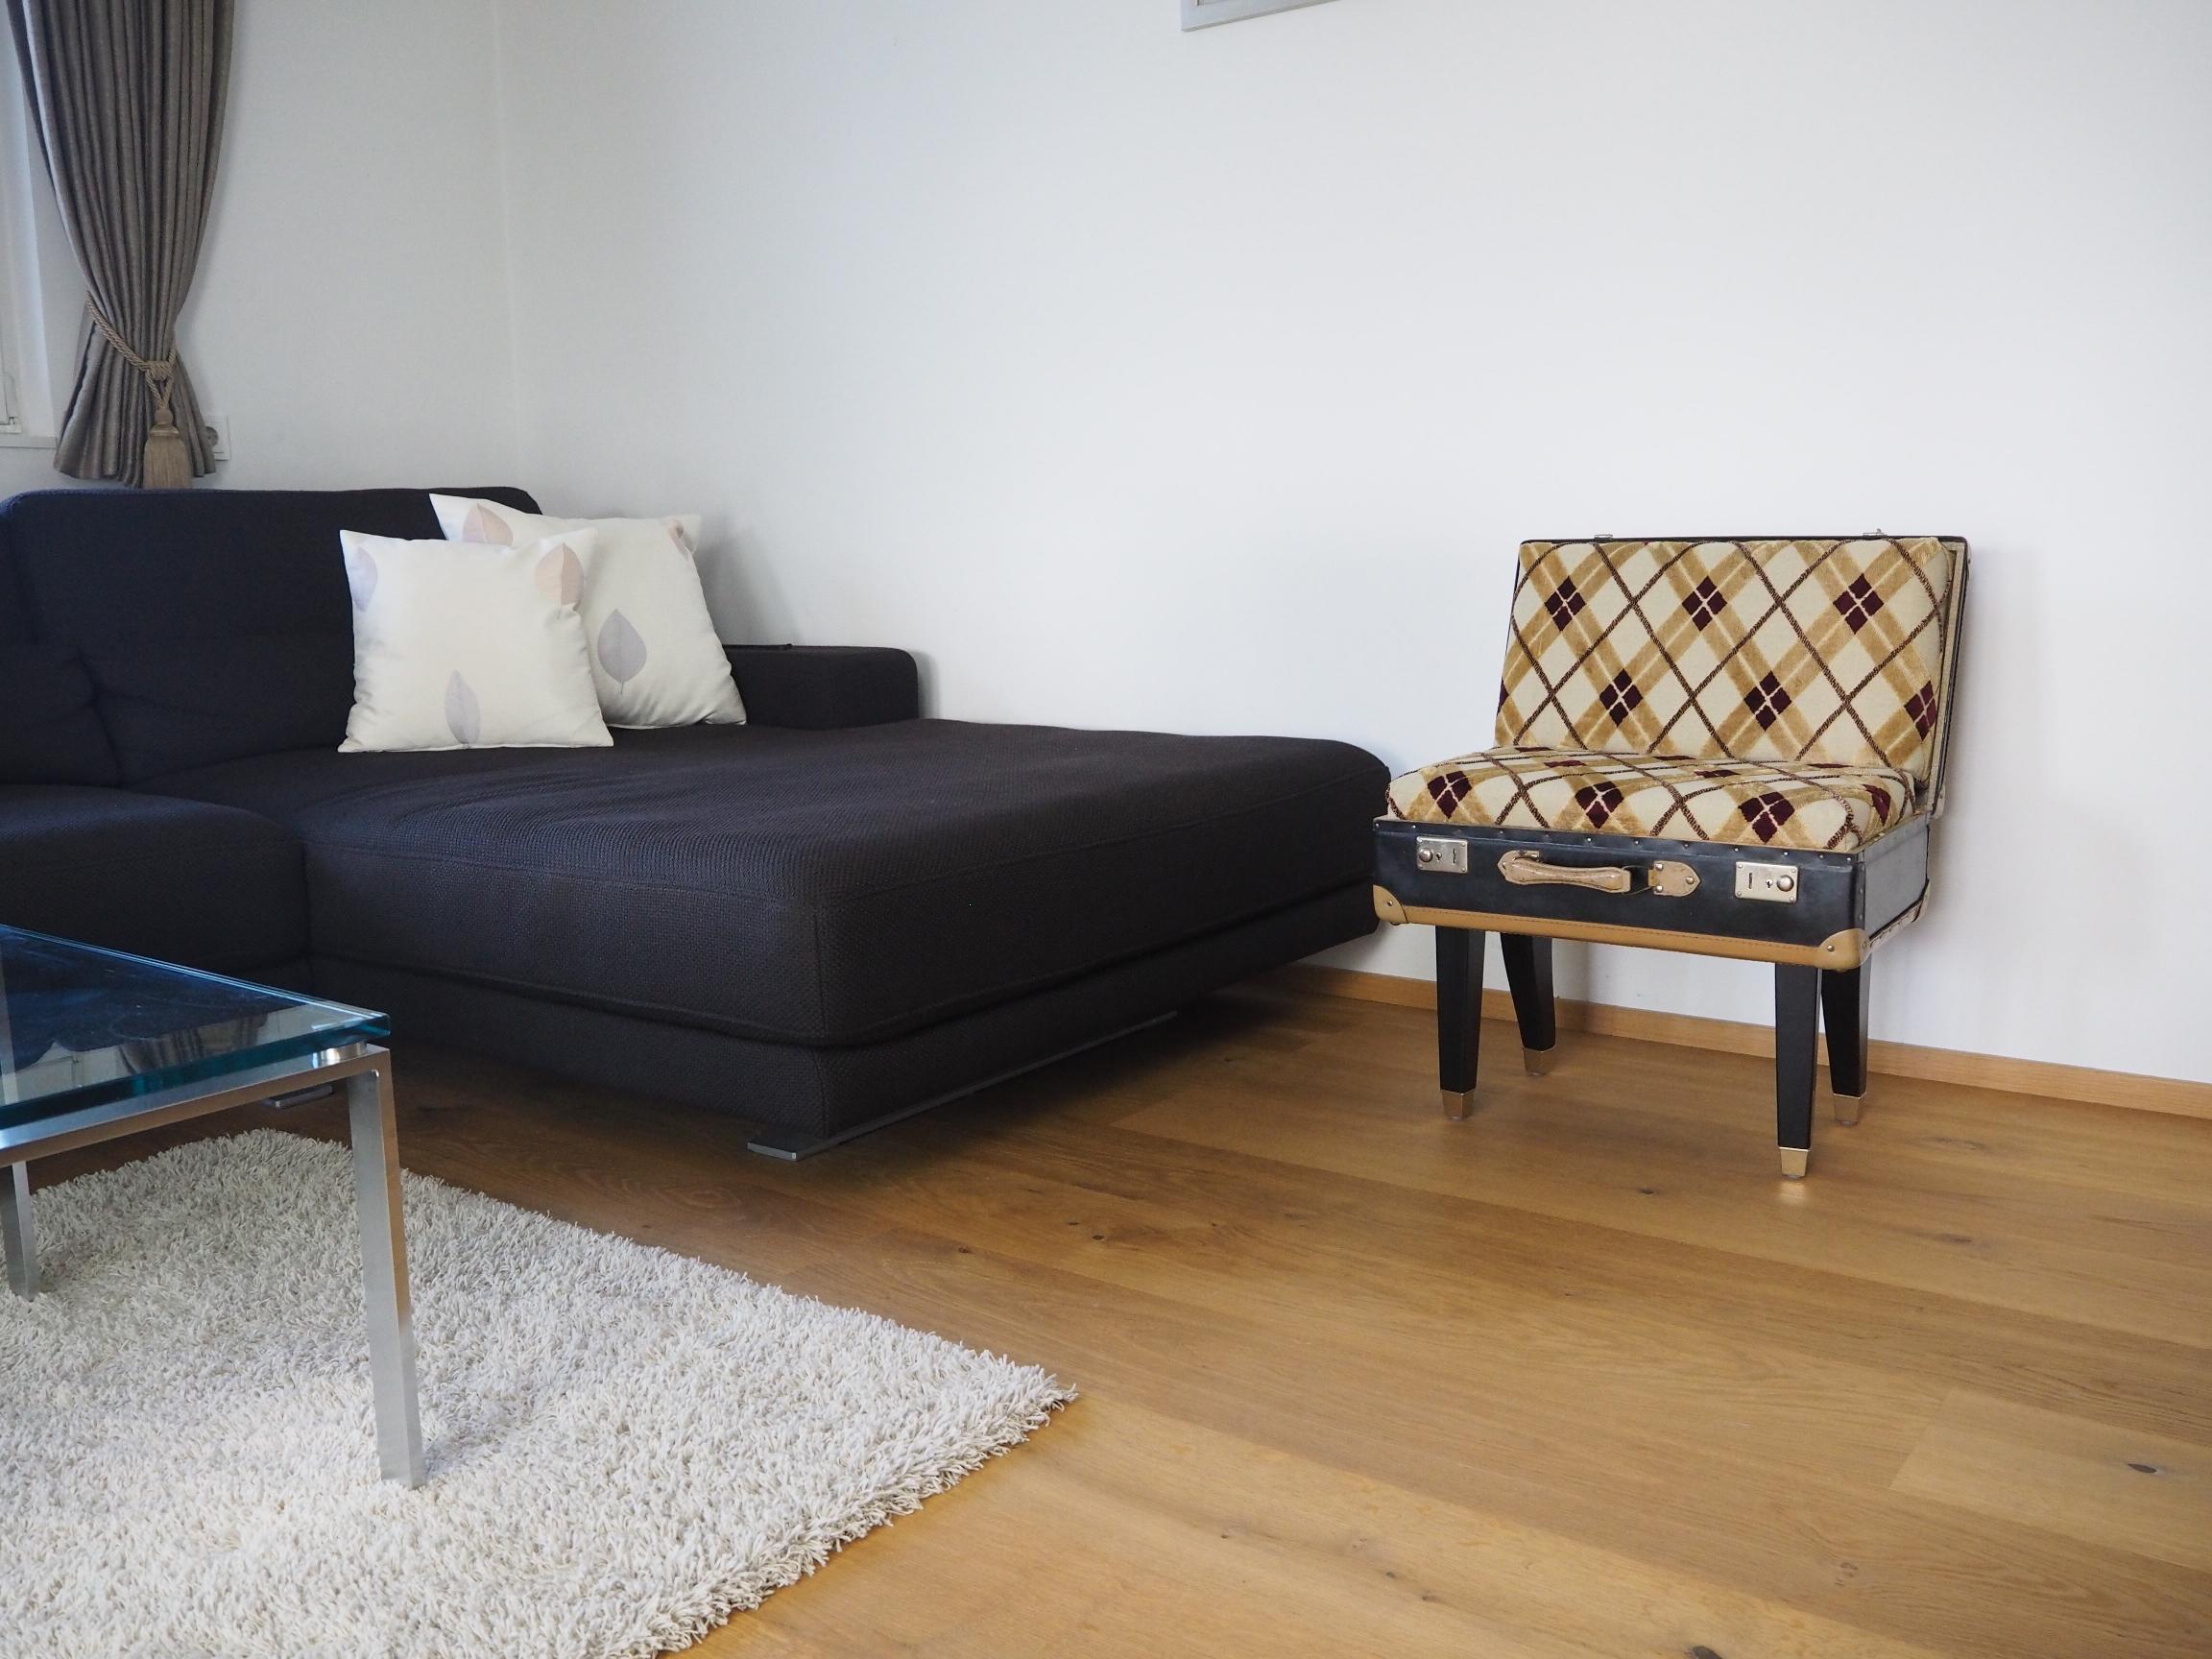 Der Kofferstuhl - ein tolles Element #wohnzimmer #designermöbel #handarbeit ©IUNICUM GmbH